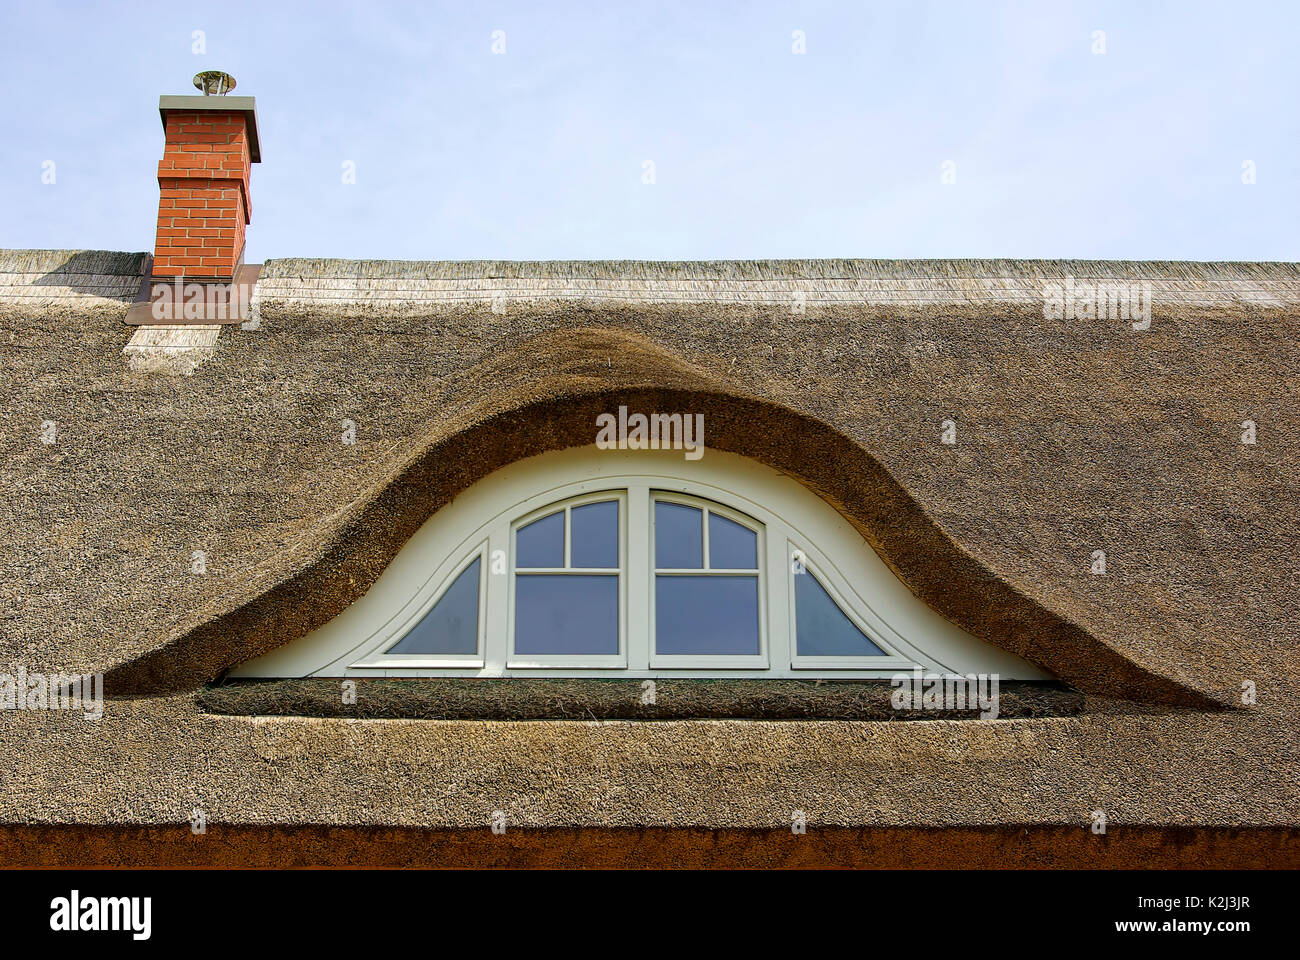 Un tetto a lamelle con un sopracciglio dormer sulla parte superiore di una tipica casa d' abitazione come di consueto in Germania settentrionale e Mecklenburg-Pomerania. Foto Stock